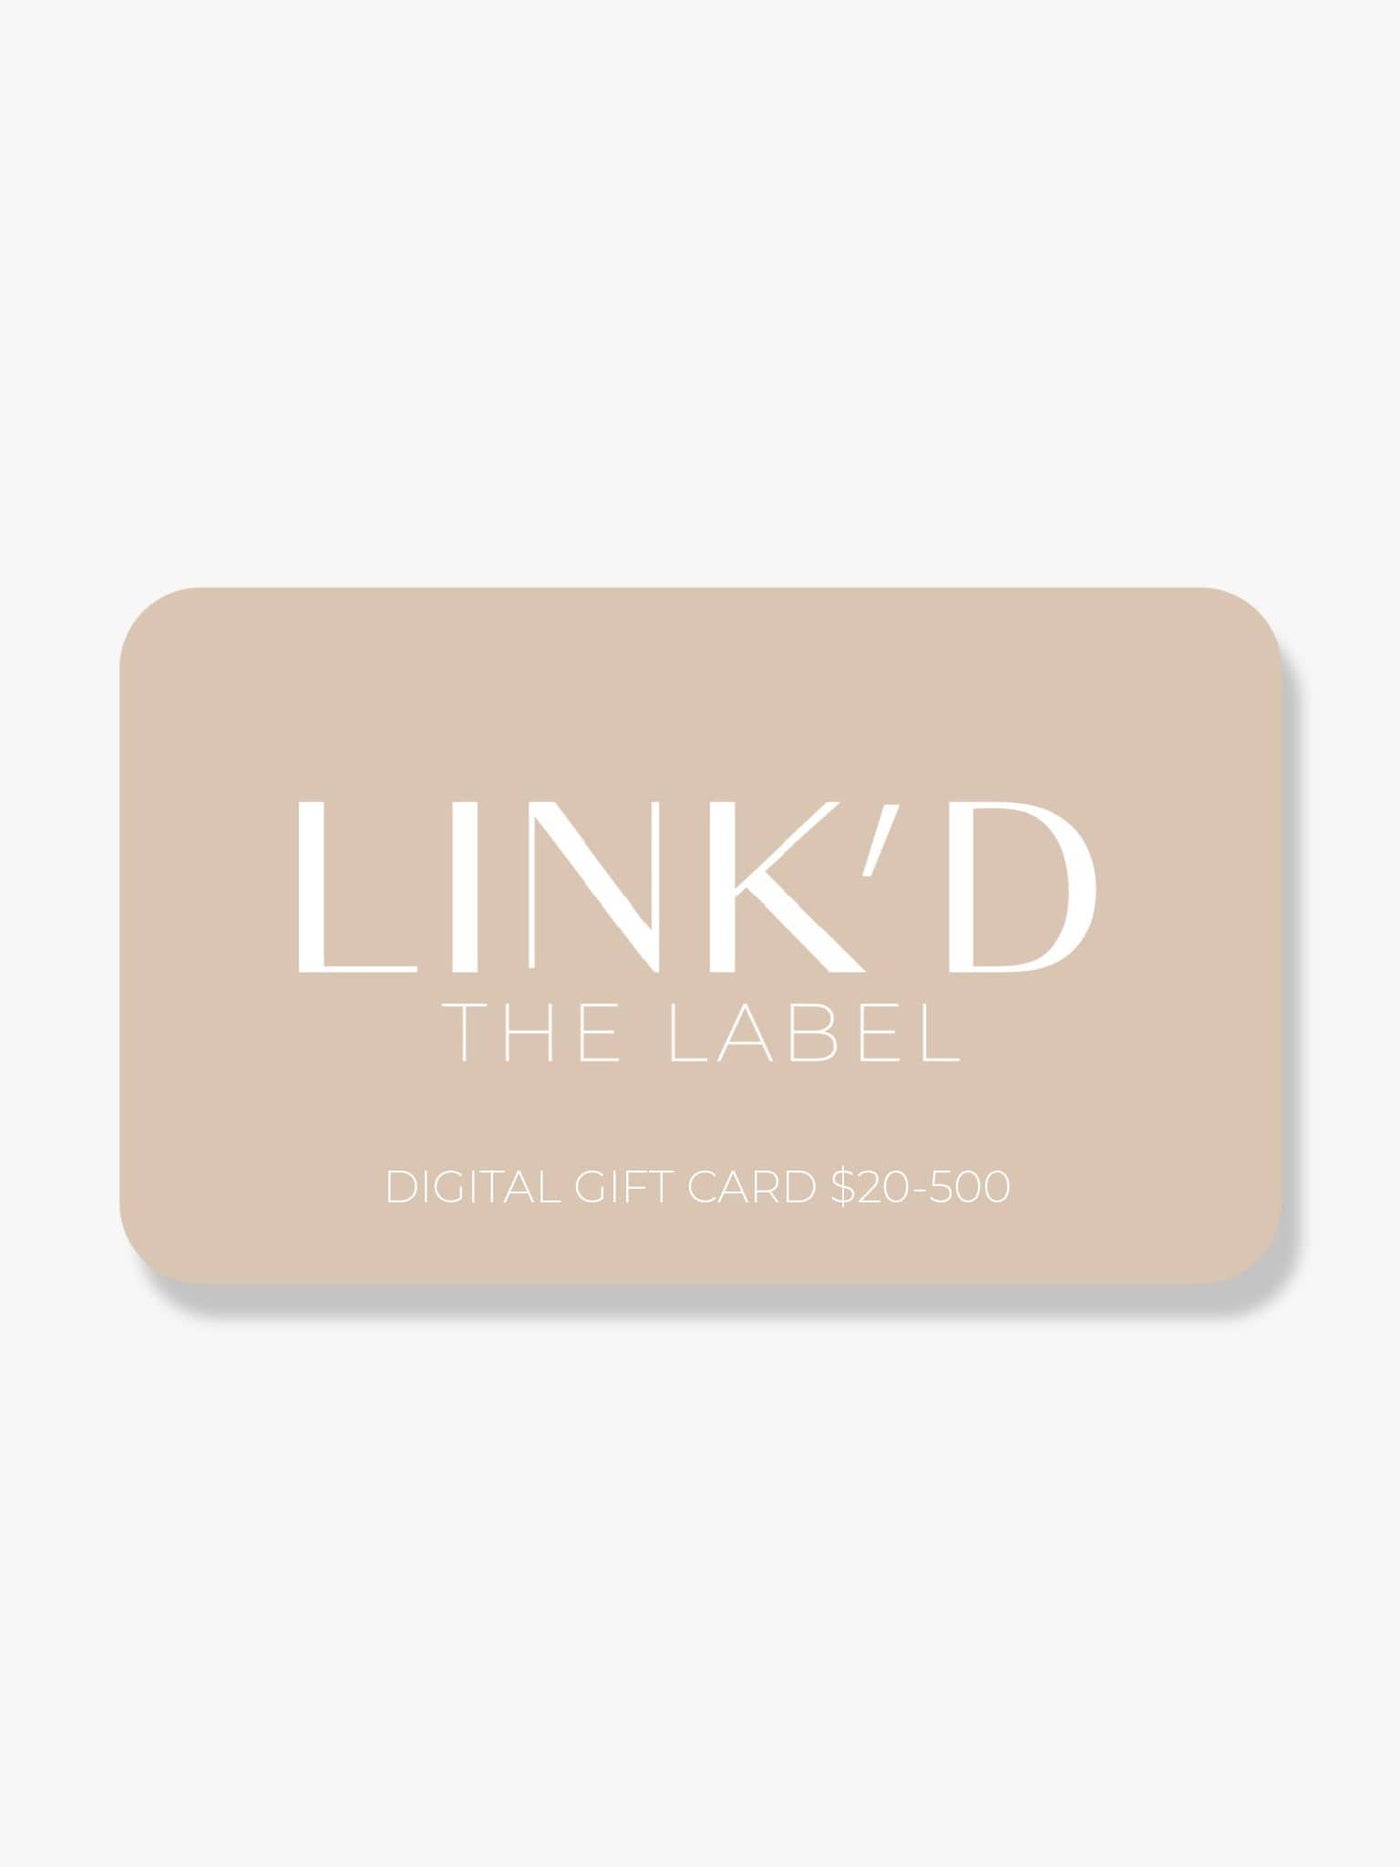 14K Gold Filled Gift Card Digital Gift Card LINK'D THE LABEL